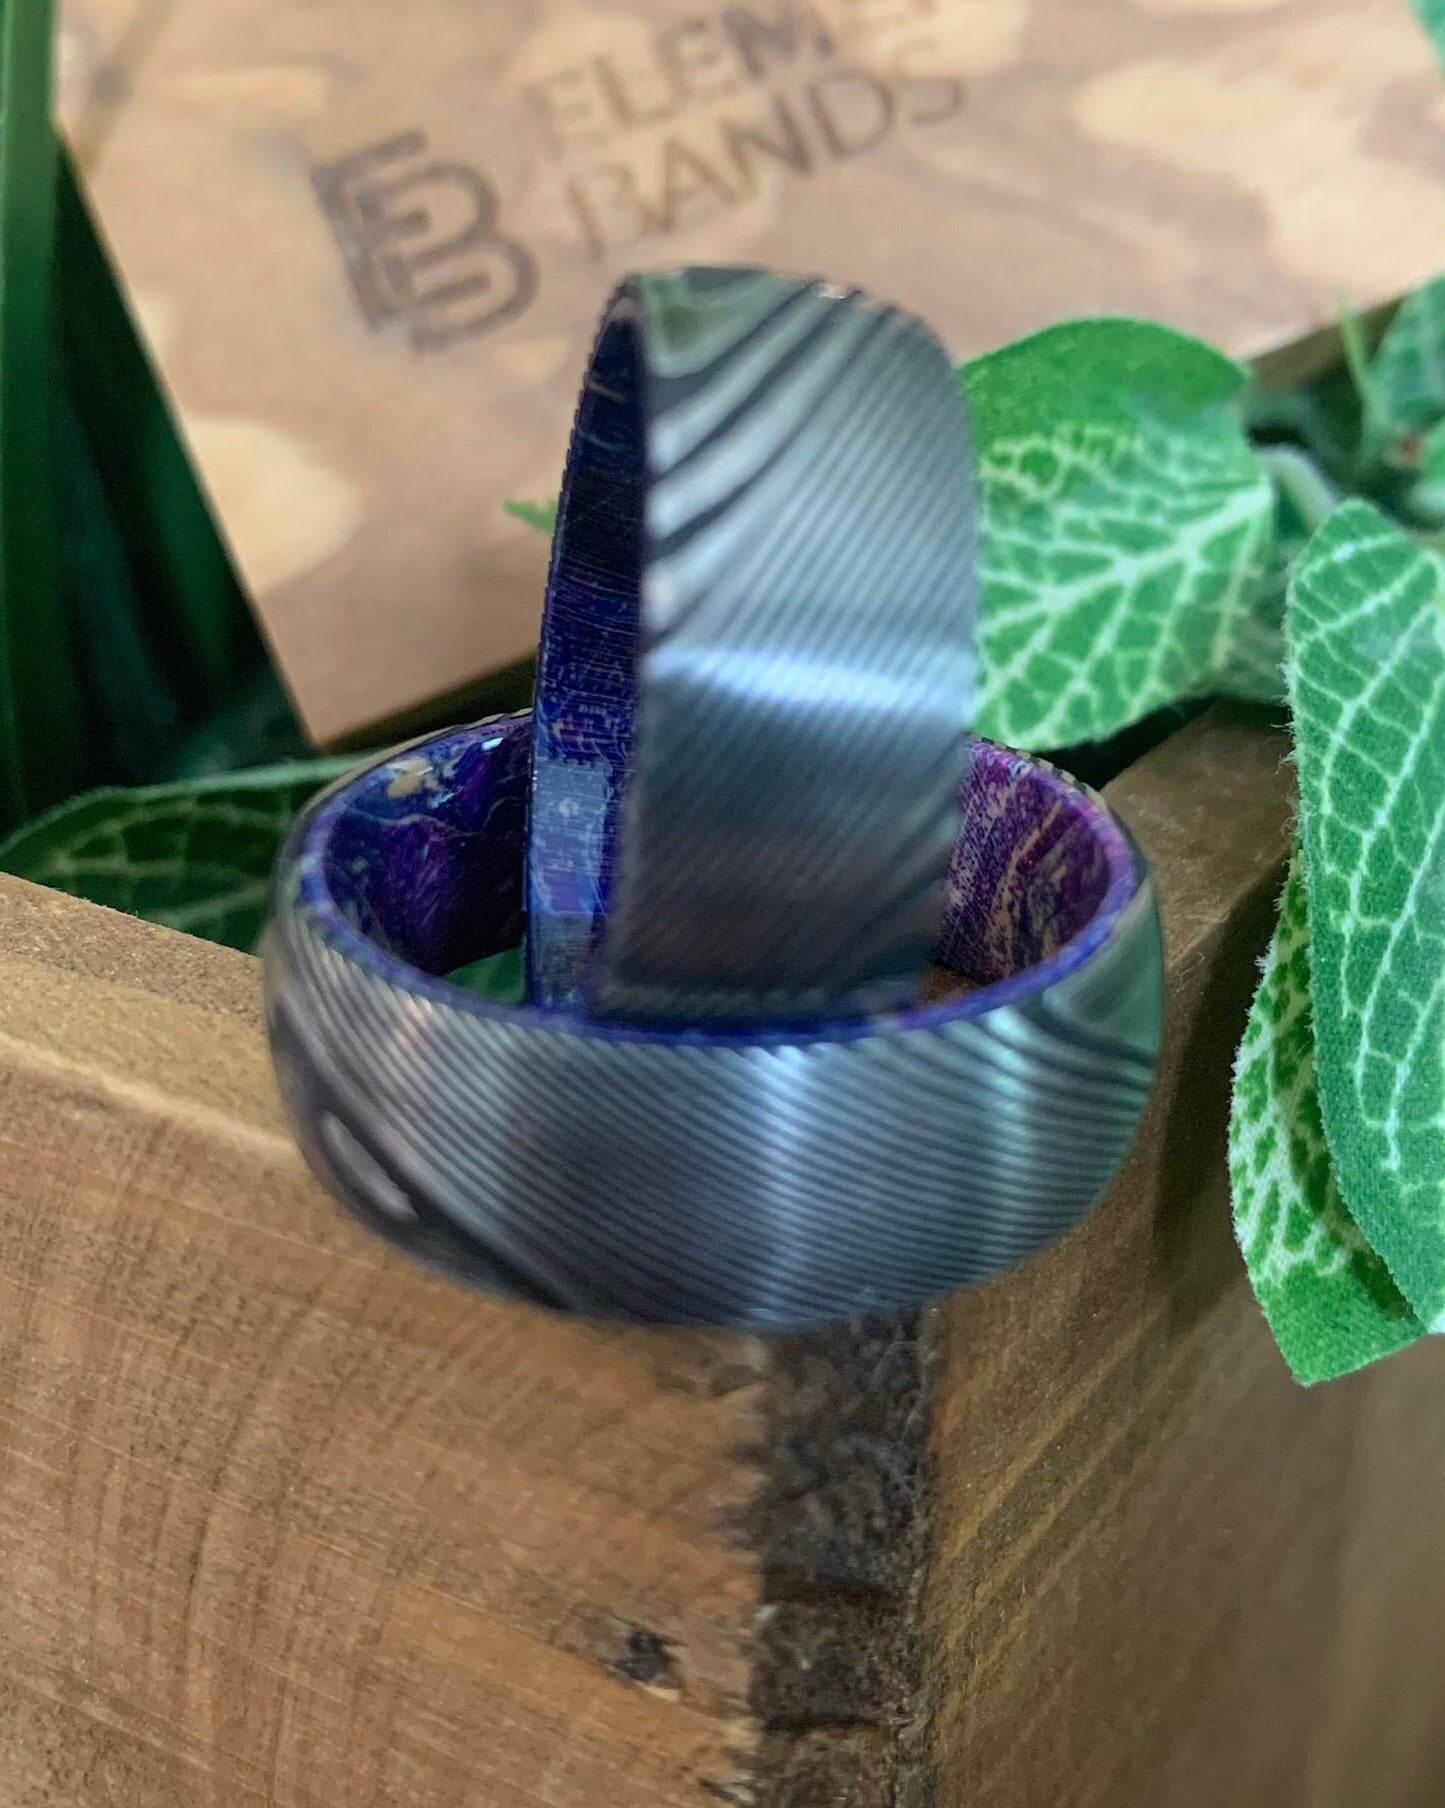 Purple Steel - Mens Damascus Steel Ring with Purple Elder Wood Sleeve